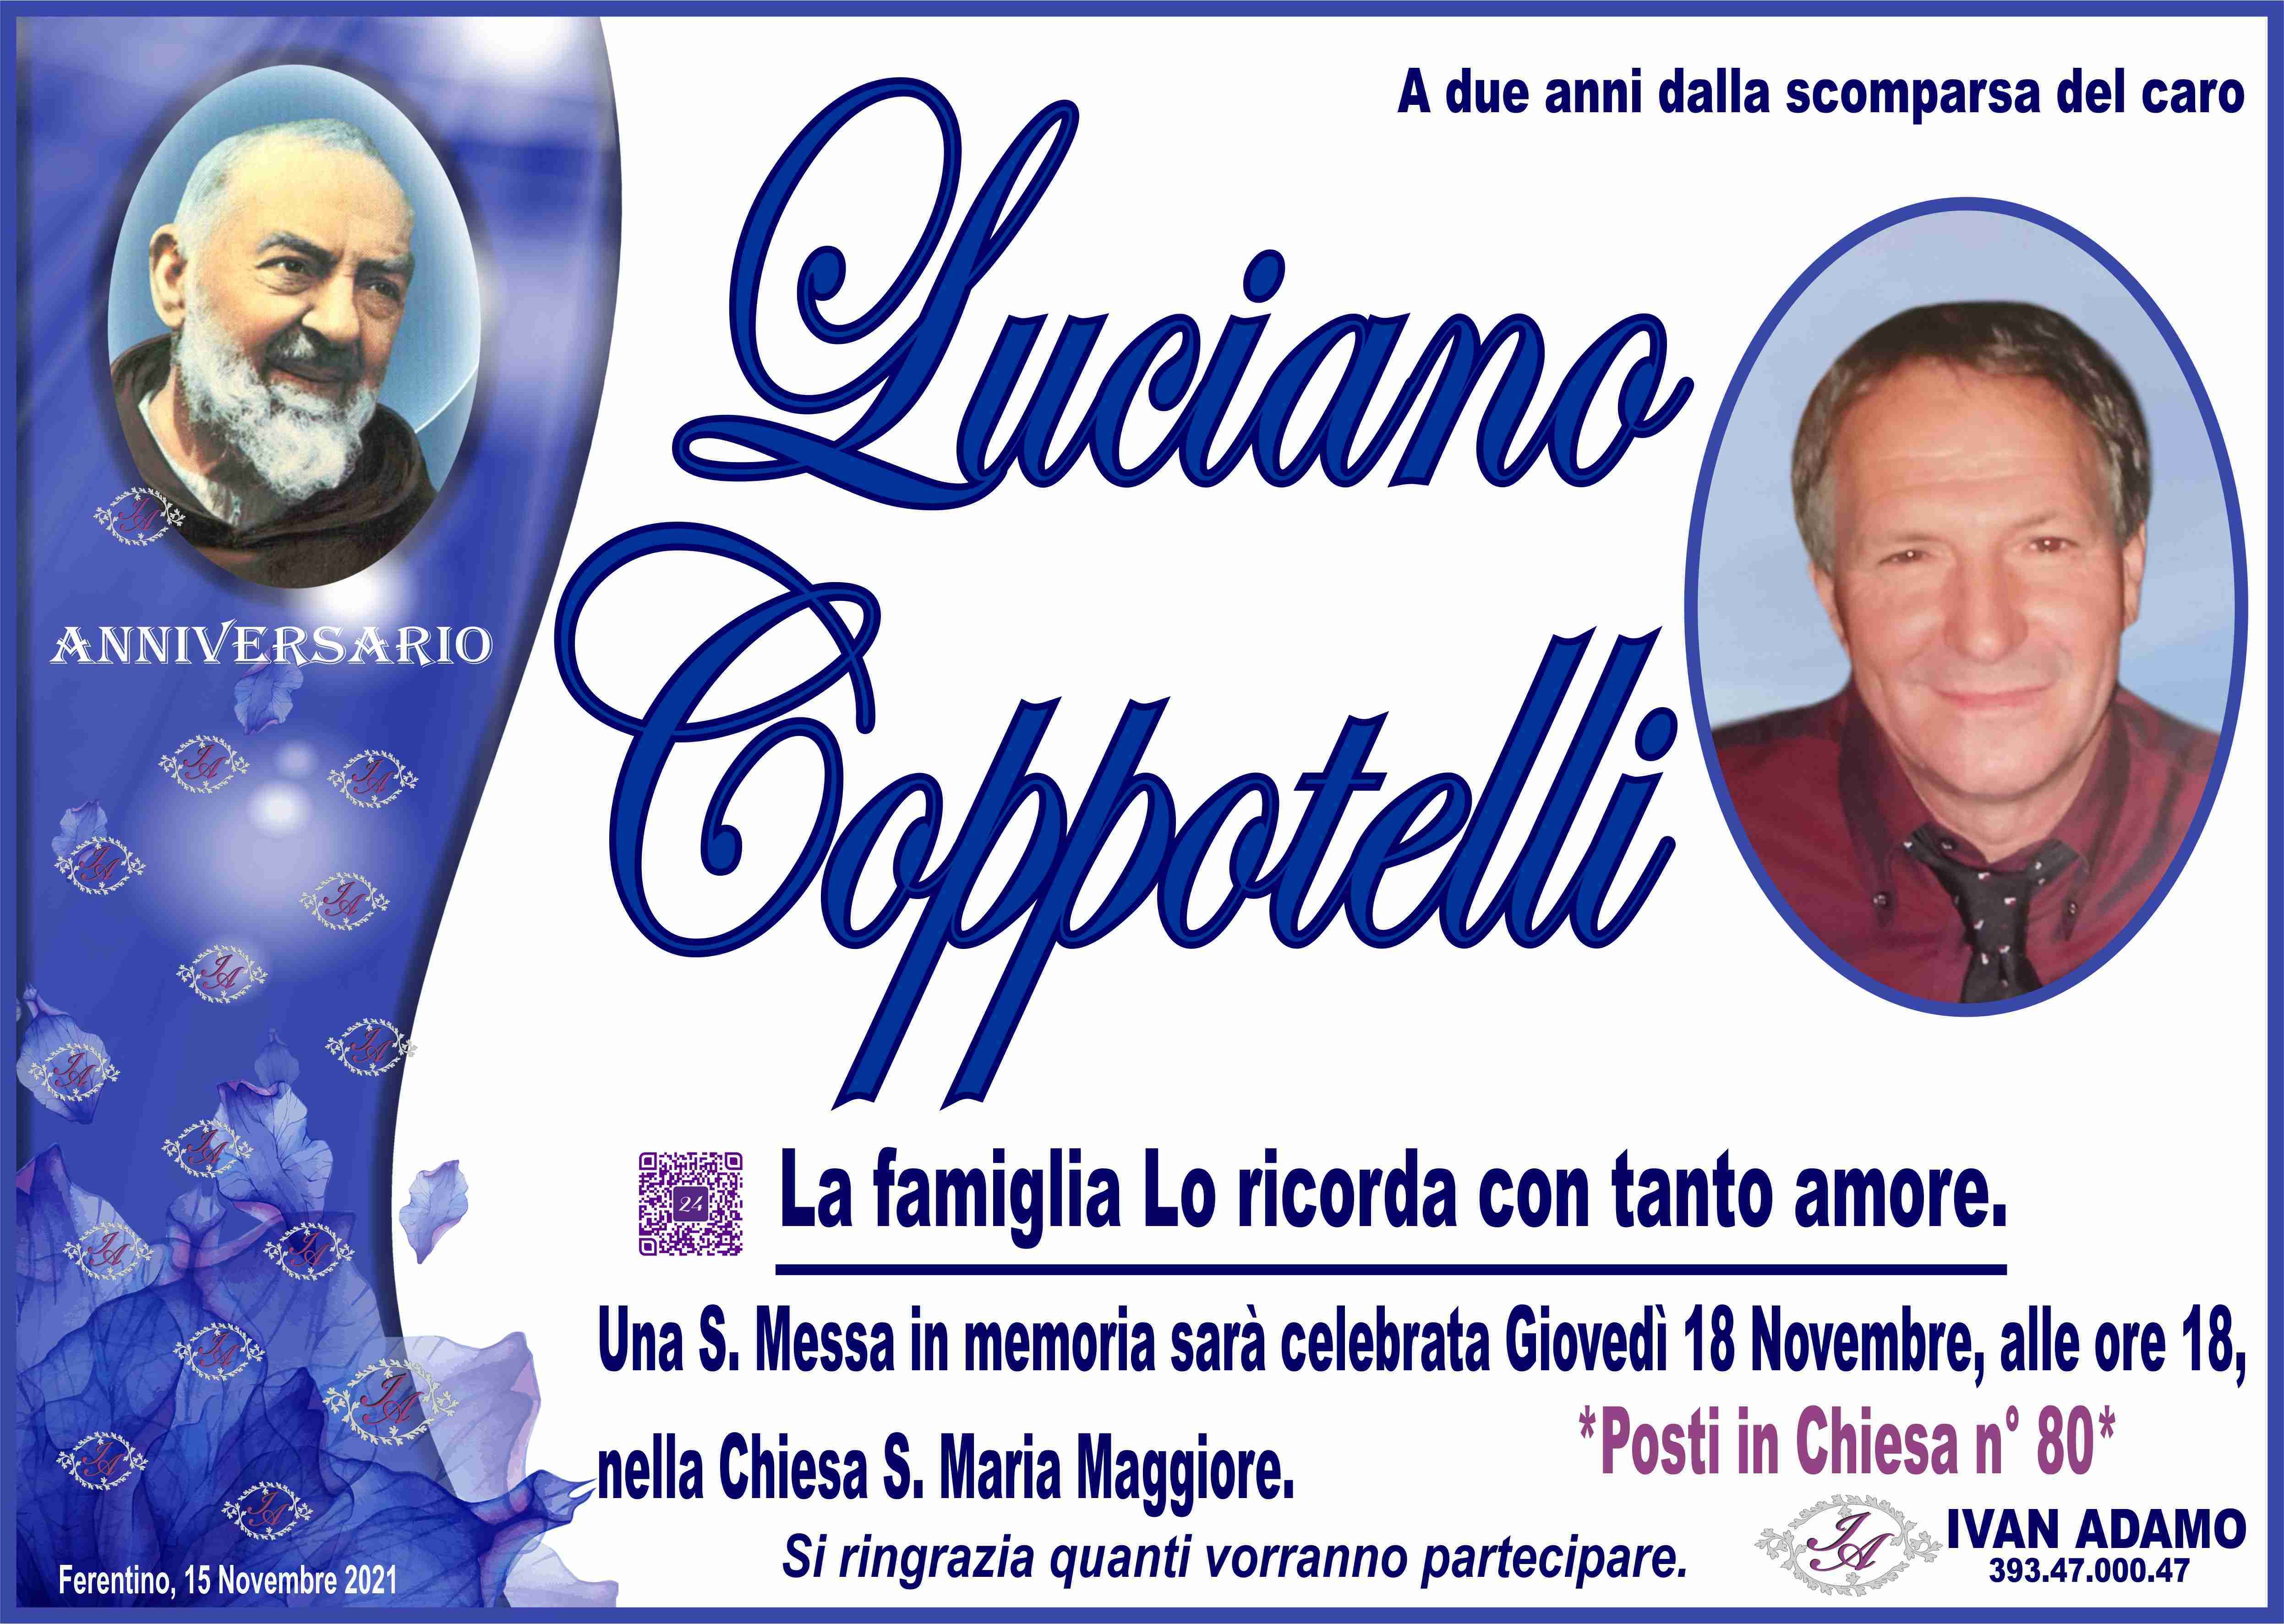 Luciano Coppotelli